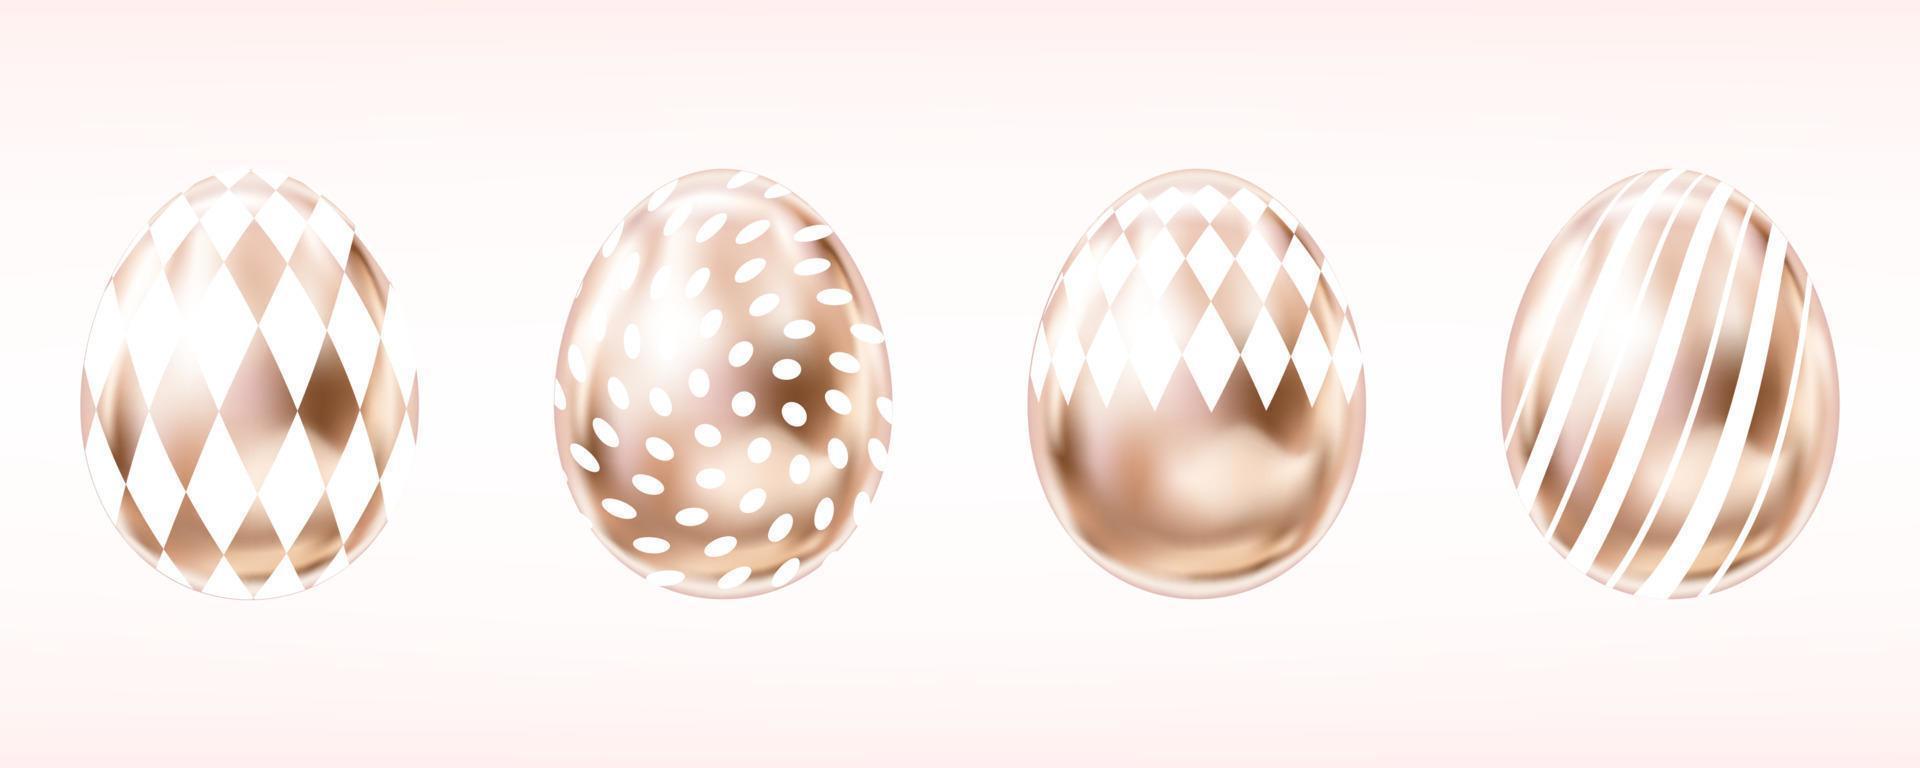 quattro sguardi di uova metalliche di colore rosa con punti bianchi, rombo e strisce. oggetti isolati per la decorazione di pasqua vettore